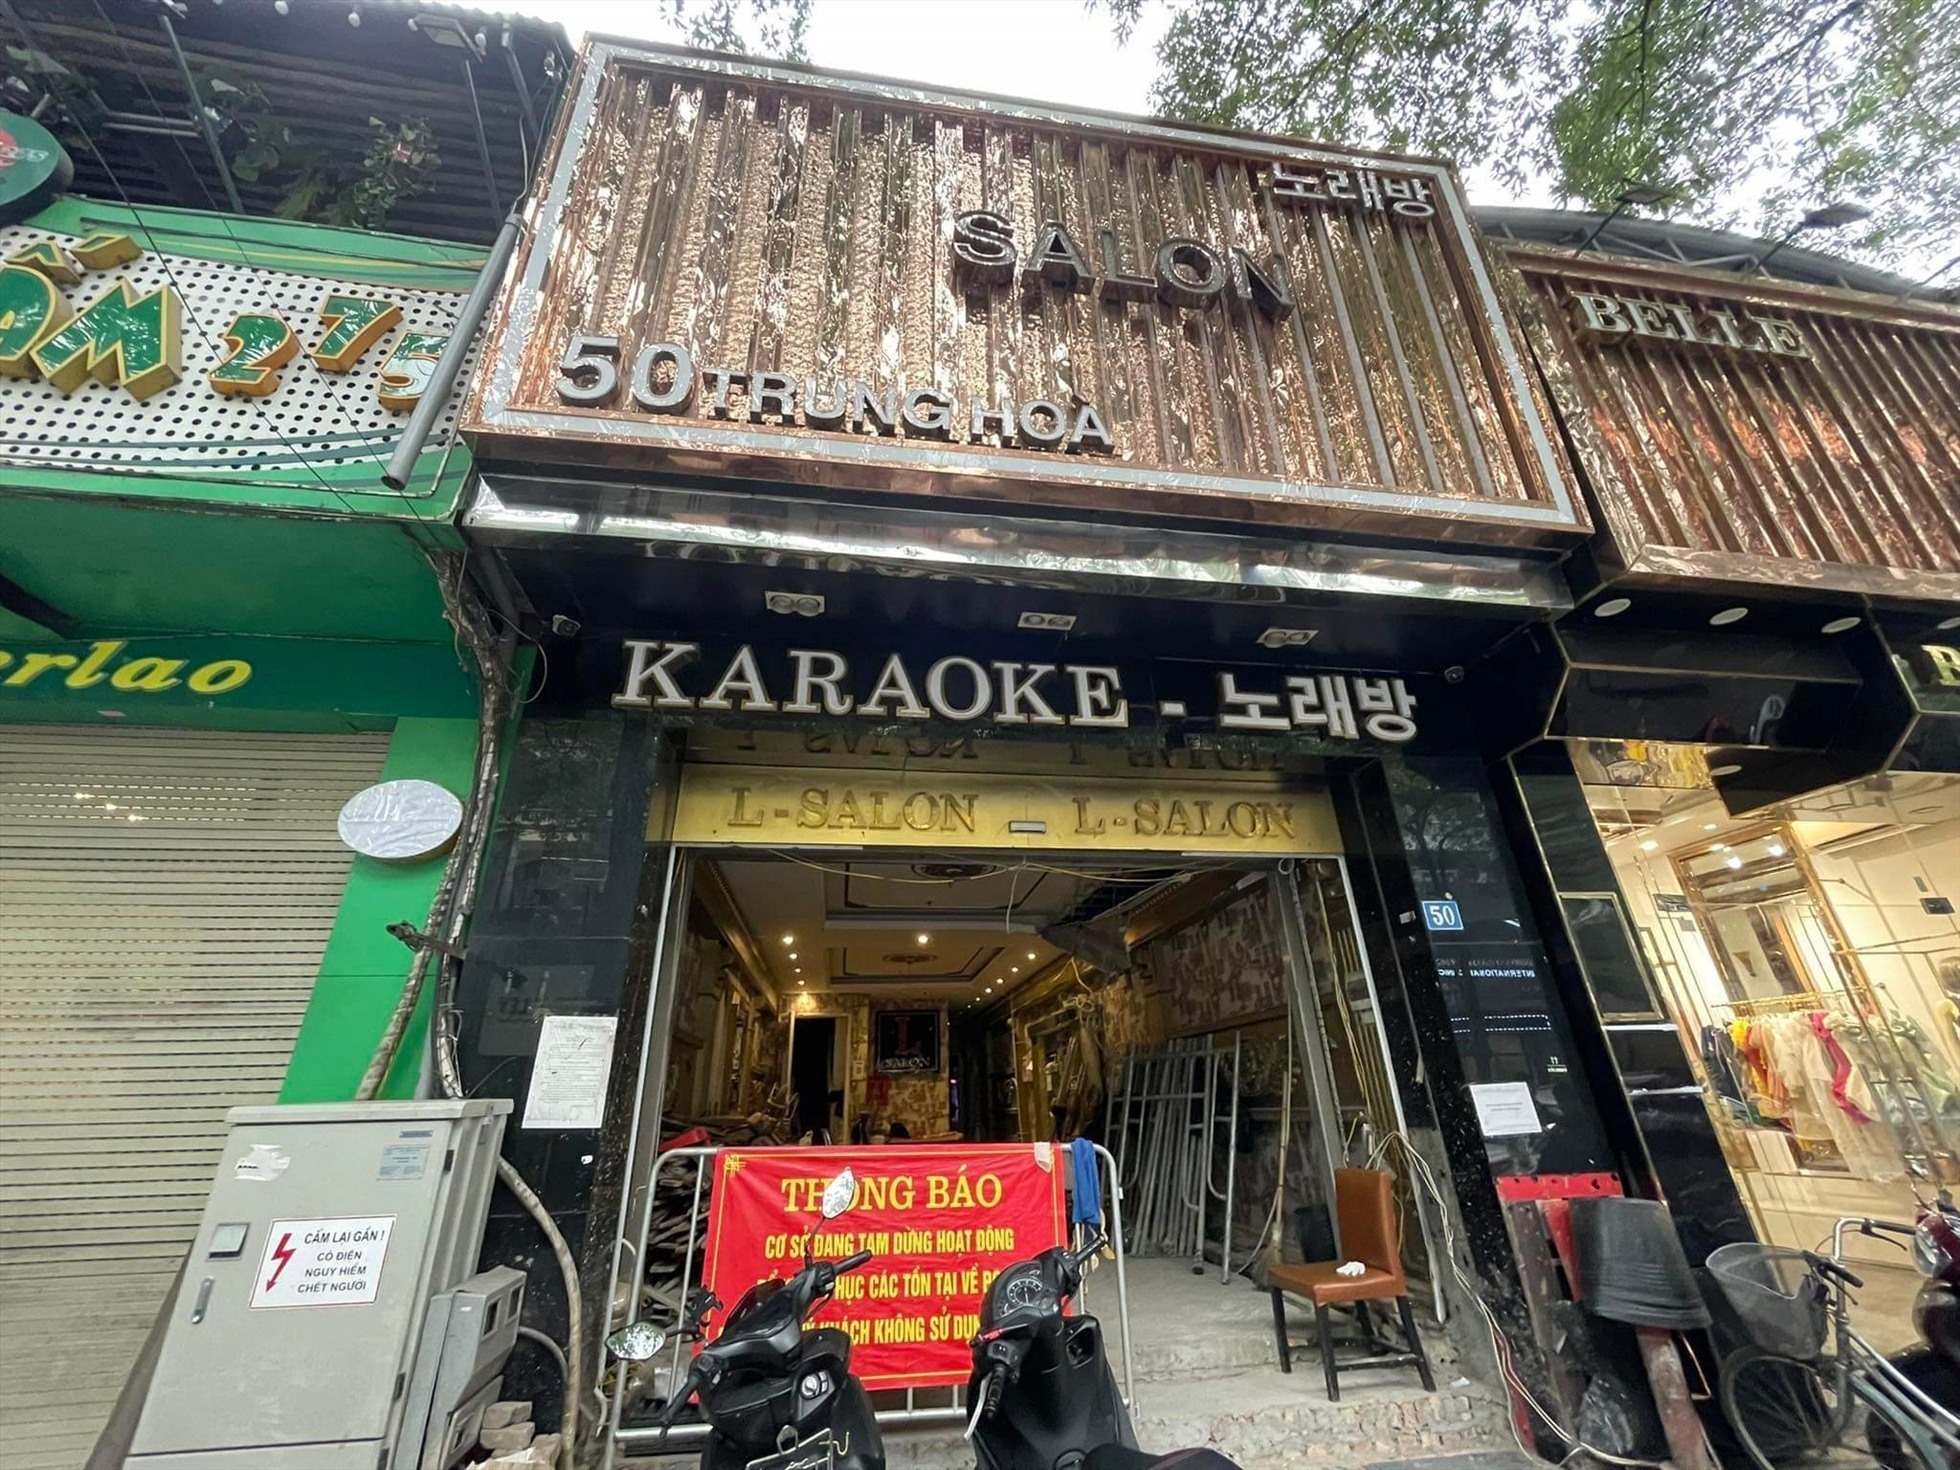 Hầu hết các quán karaoke ở Hà Nội hiện đang phải đóng cửa, tạm ngừng hoạt động. Ảnh: Khánh An